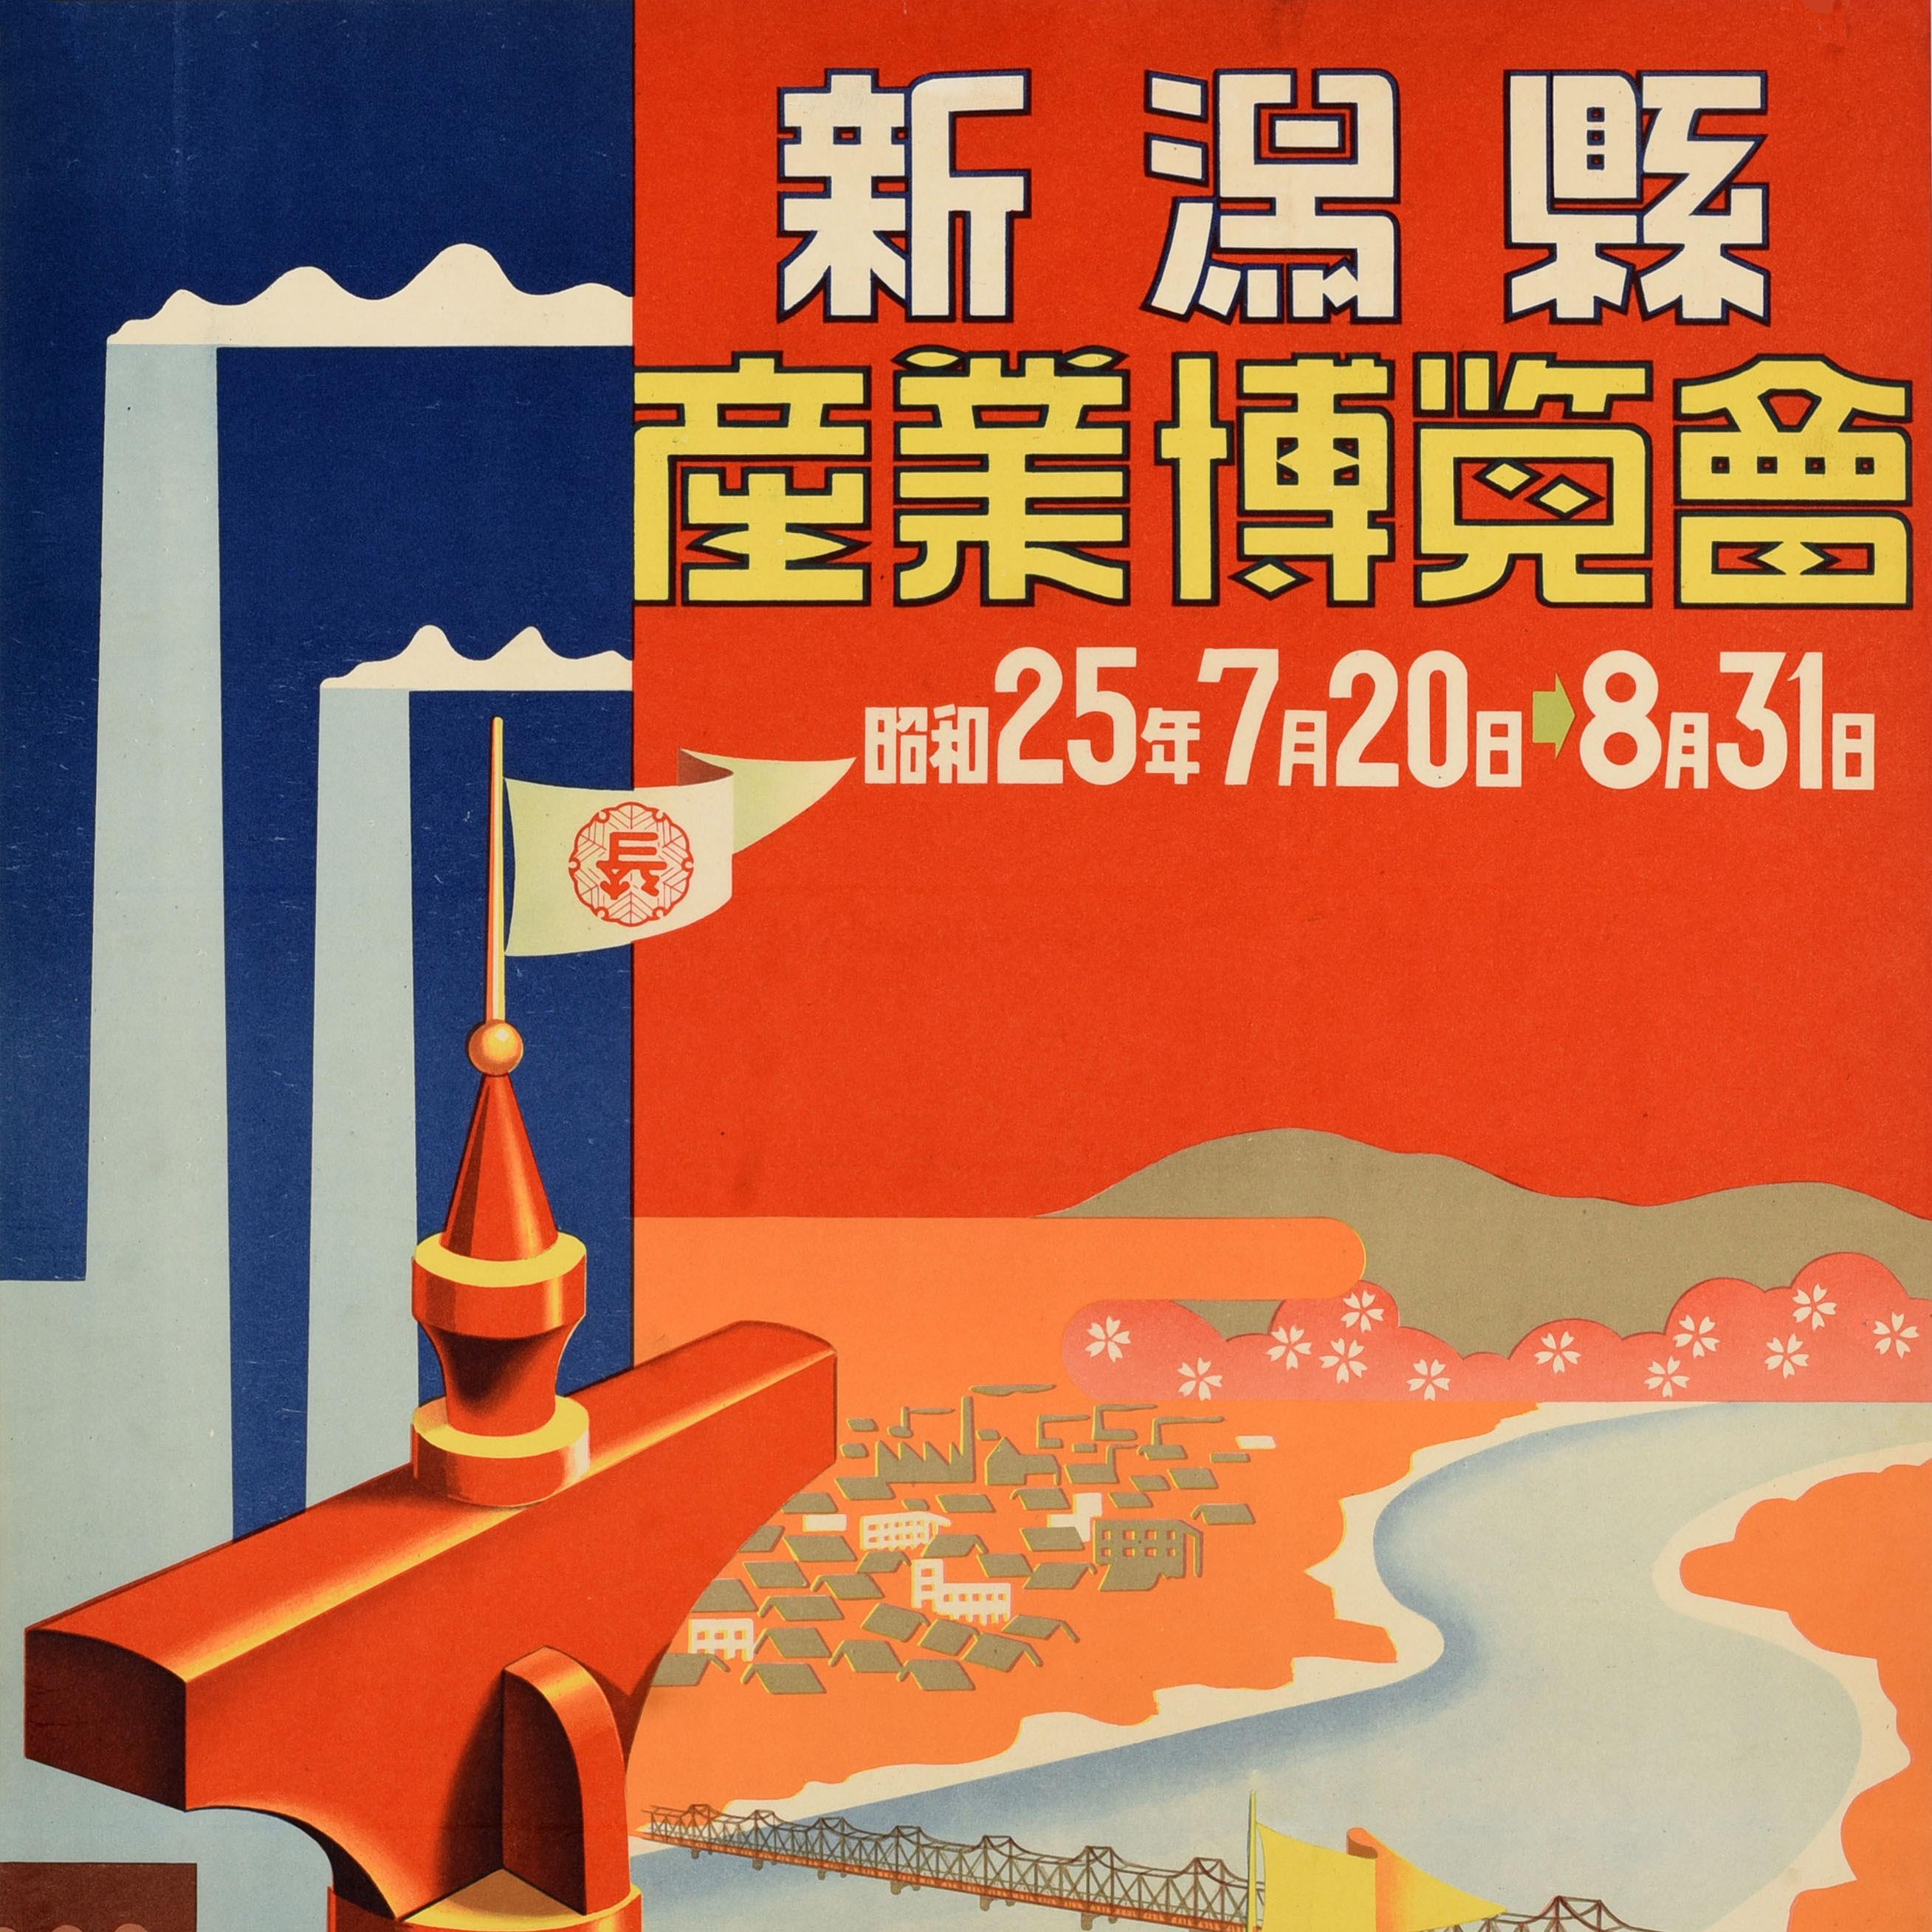 Original-Reisewerbeplakat für die 新潟 Industrieausstellung der Präfektur Niigata, die vom 20. Juli bis 31. August 1950 stattfand. Das Plakat zeigt ein farbenfrohes Motiv mit Rauch, der aus den Schornsteinen von Industrieanlagen aufsteigt, eine Brücke